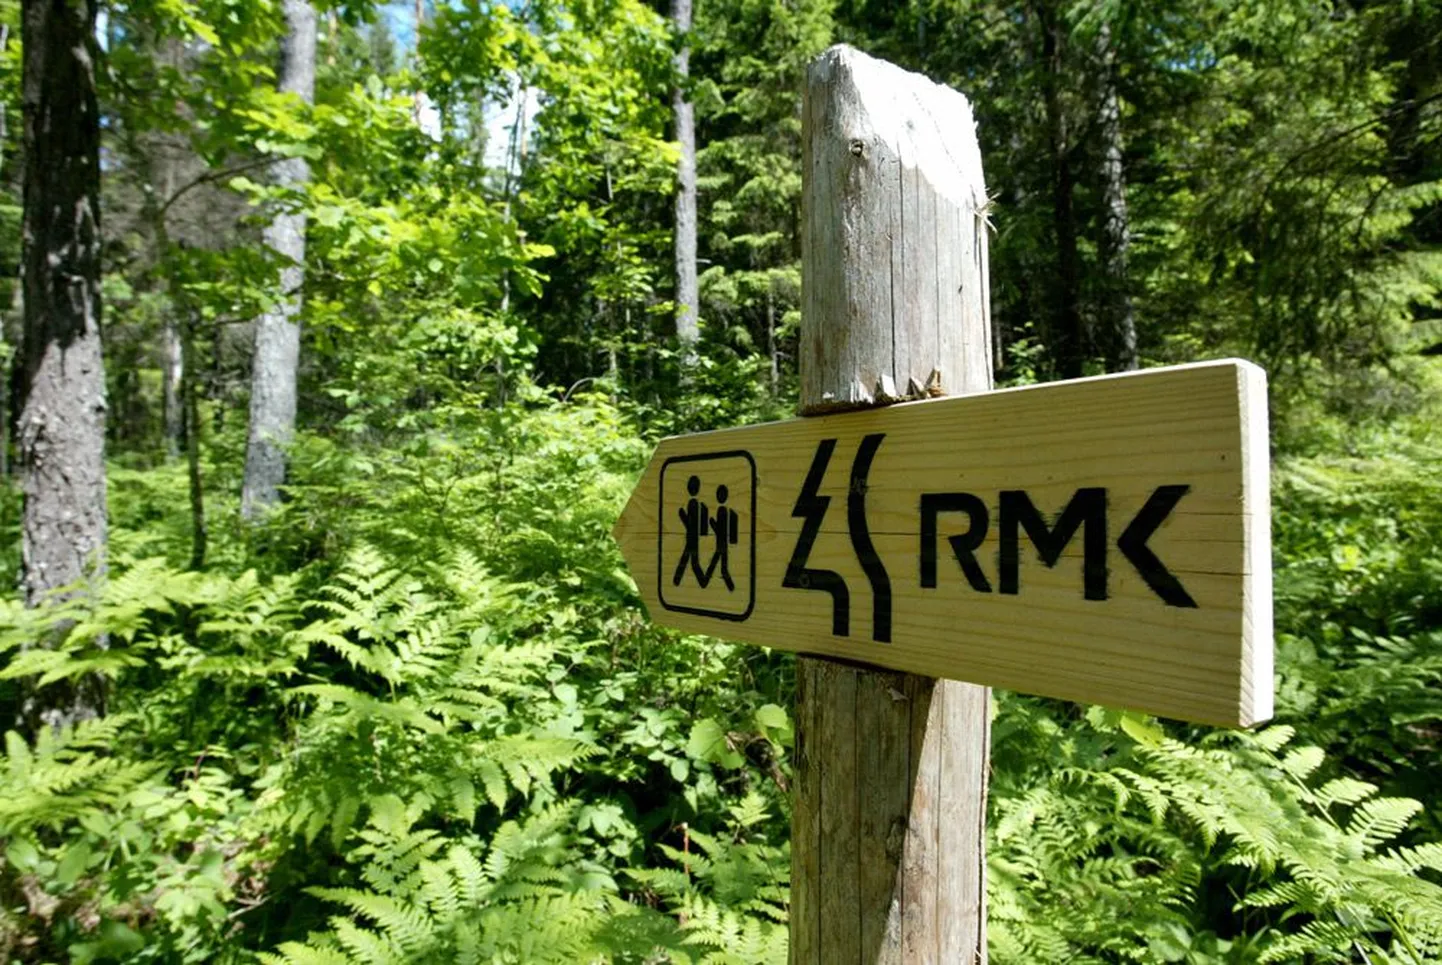 Такими знаками Центр управления государственными лесами обозначает туристические пешеходные тропы в лесах Эстонии.